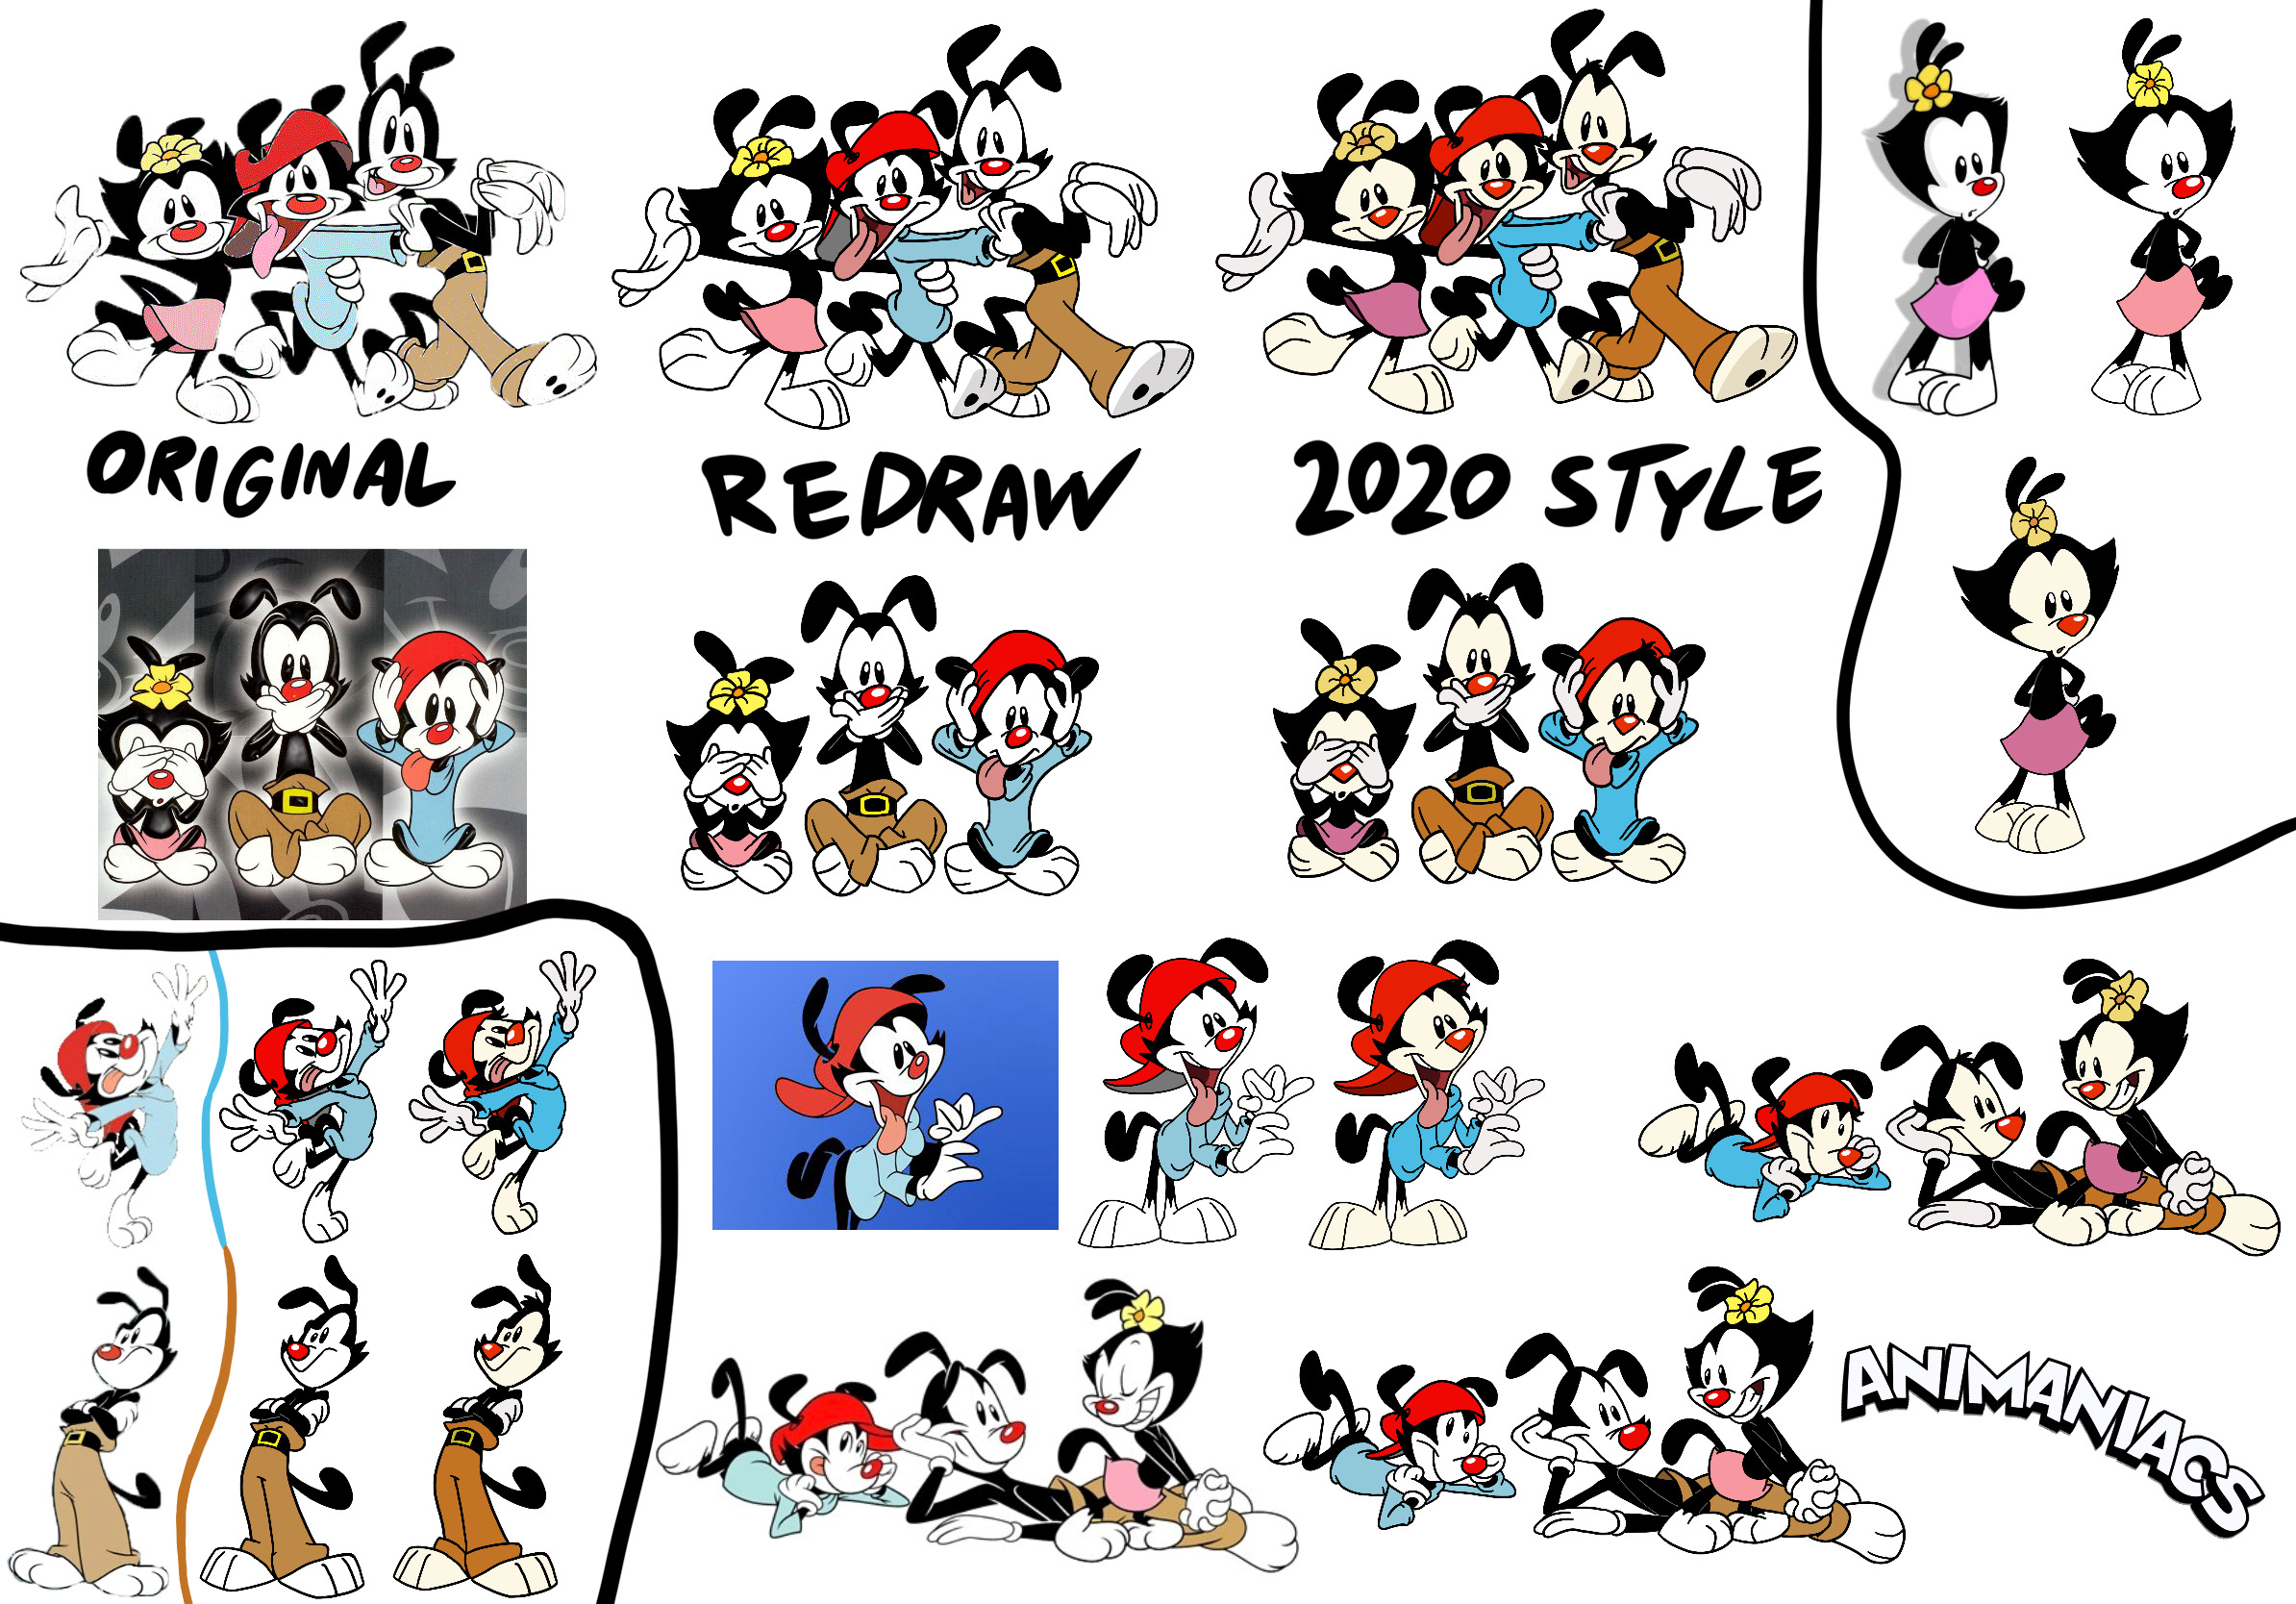 Animaniacs Animan Studios meme part 2 by TonyRuiz2002 on DeviantArt